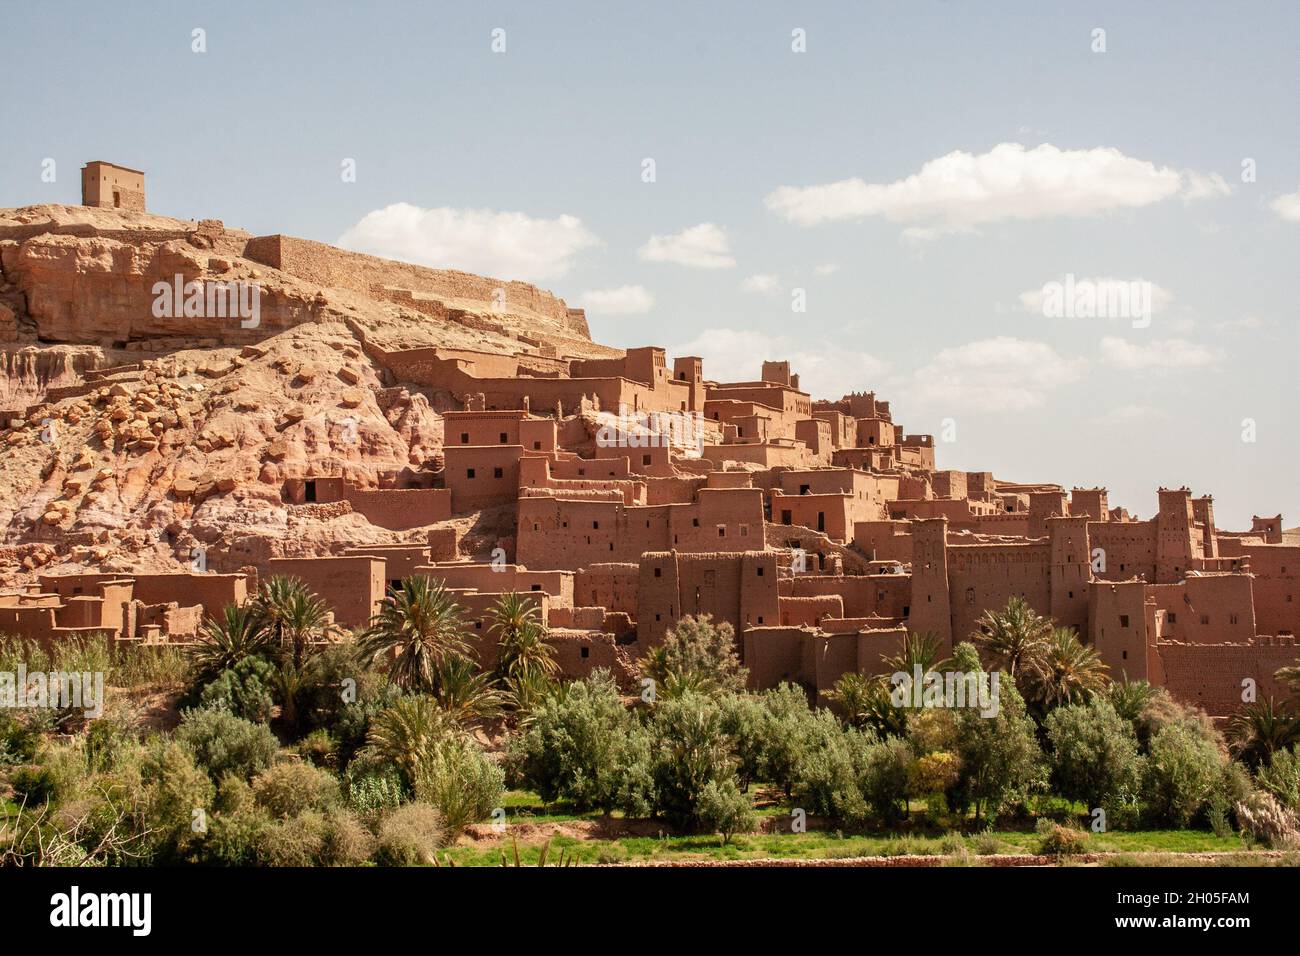 Paesaggio e paesaggio vicino alla città di Asni è una piccola città ai piedi delle montagne dell'Alto Atlante vicino a Marrakesh, Marocco. Foto Stock